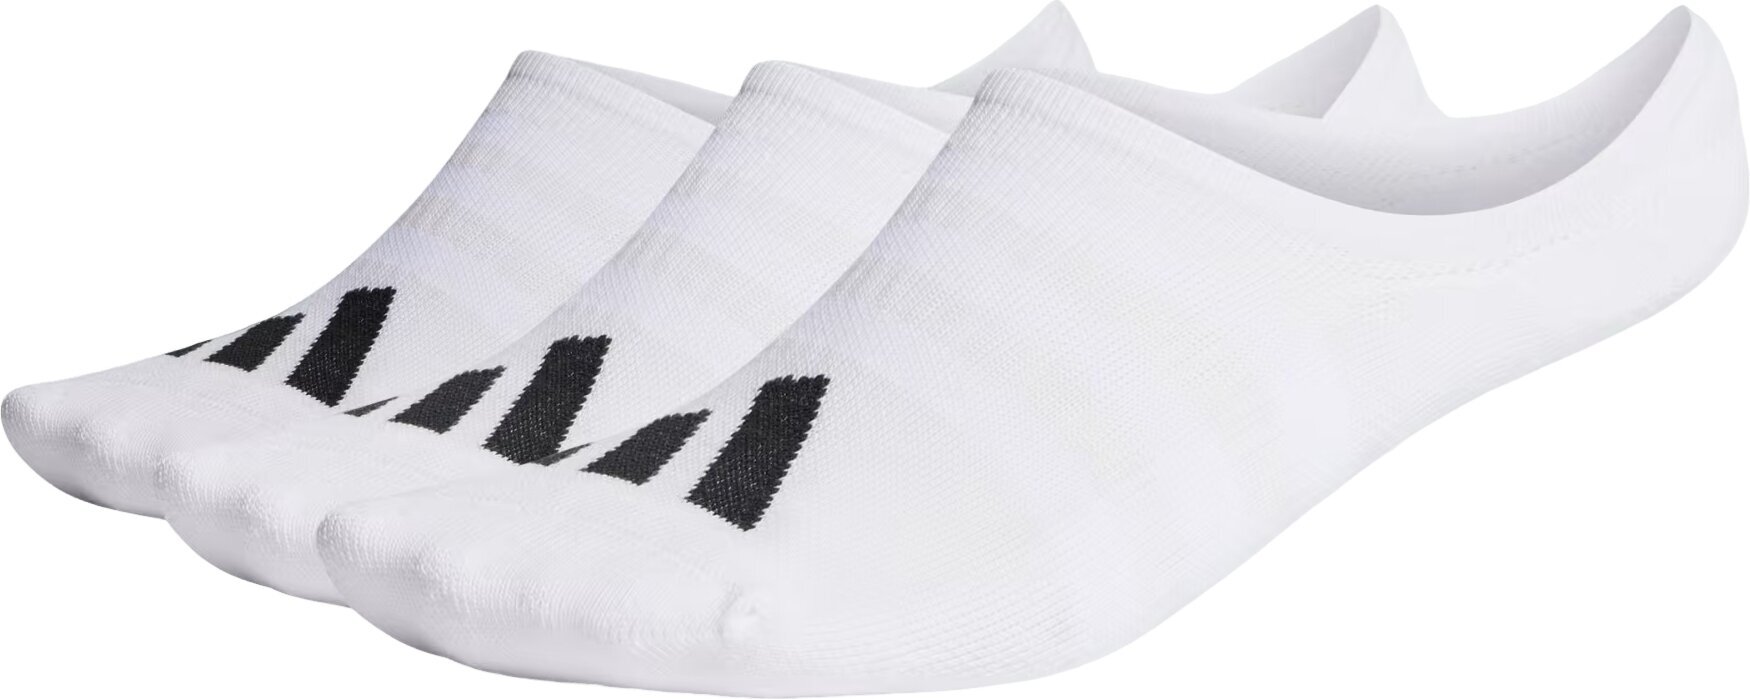 Ponožky Adidas No Show Golf Socks 3-Pairs Ponožky White 48-51